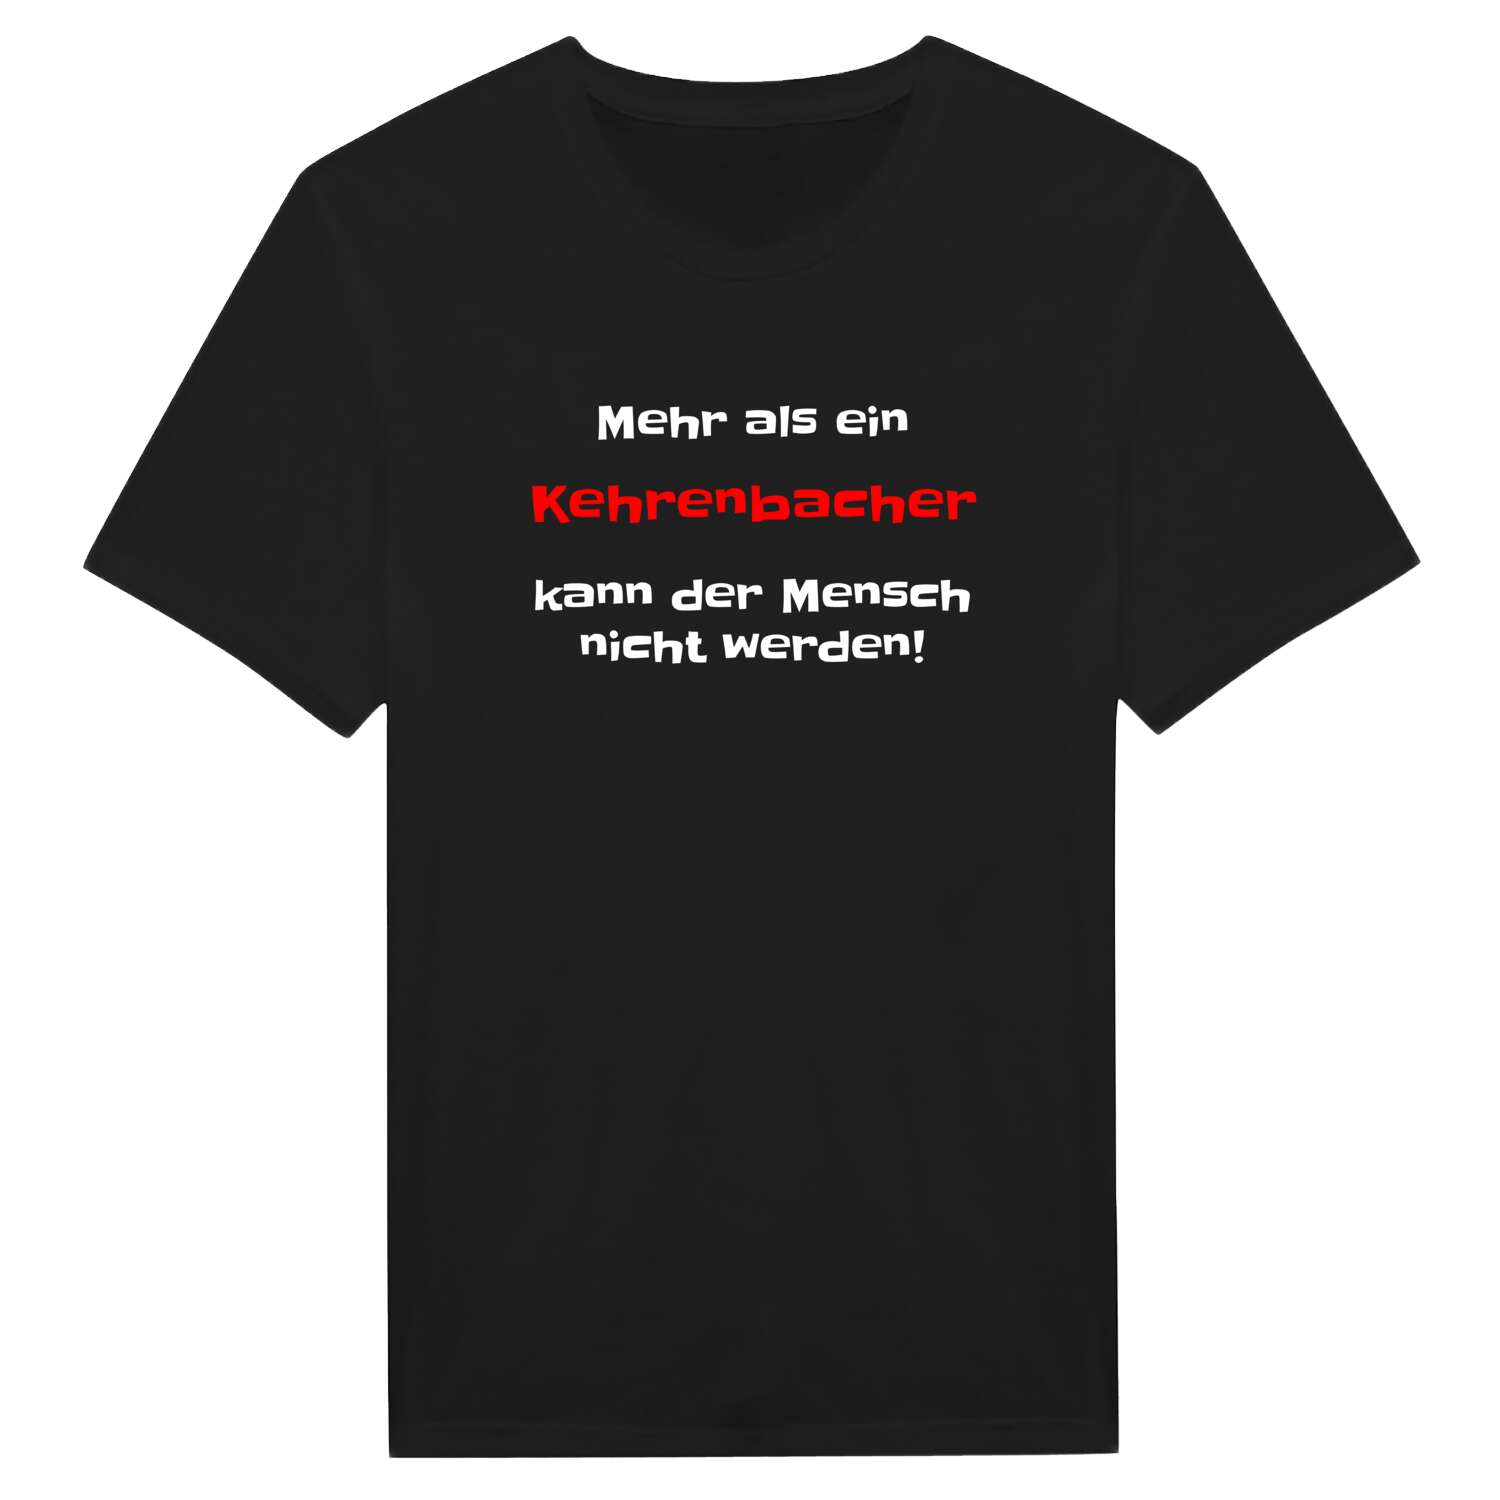 Kehrenbach T-Shirt »Mehr als ein«